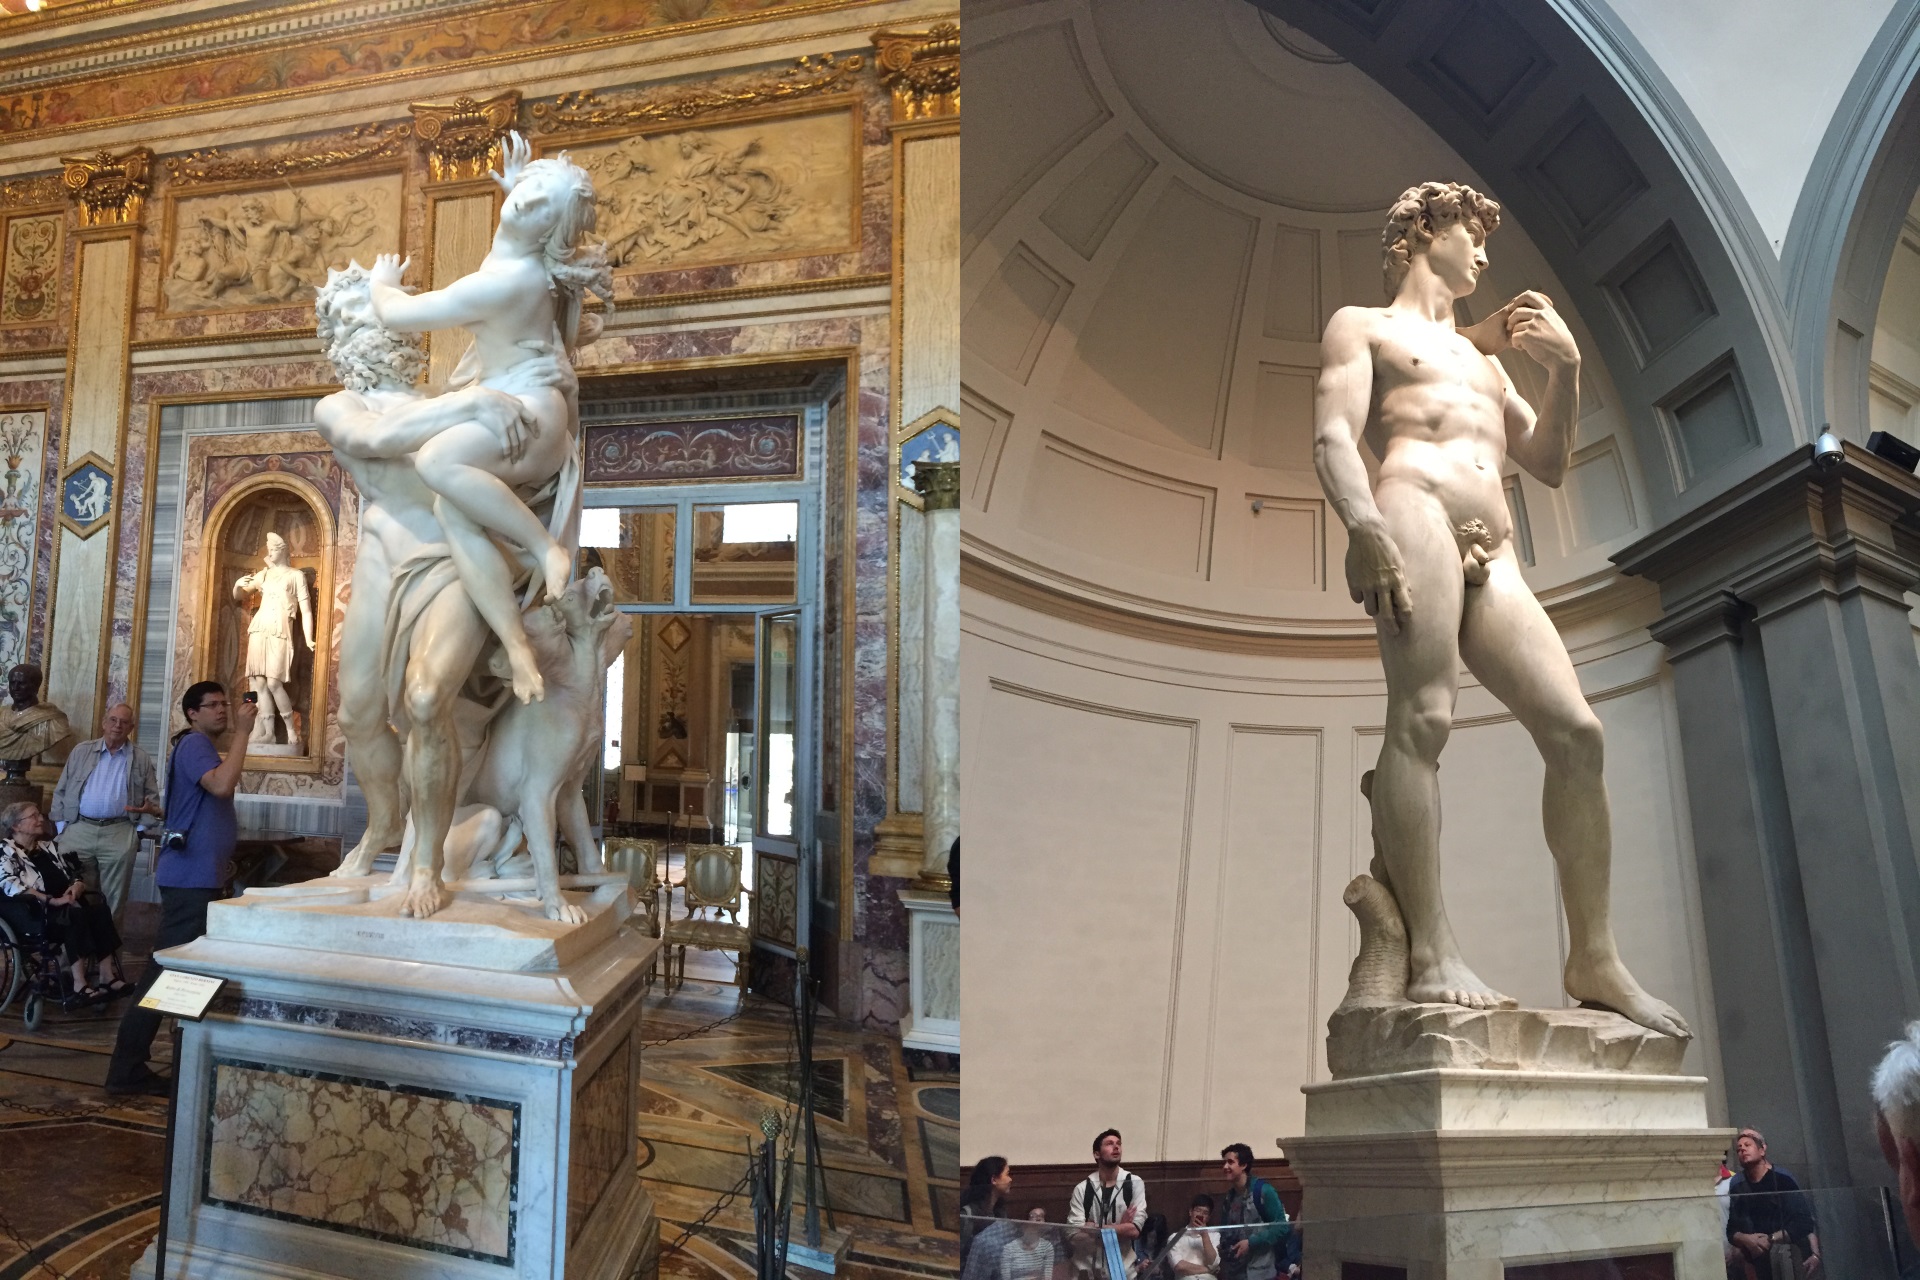 Bernini’s Rape of Proserpina Statue compared with Michelangelo’s David